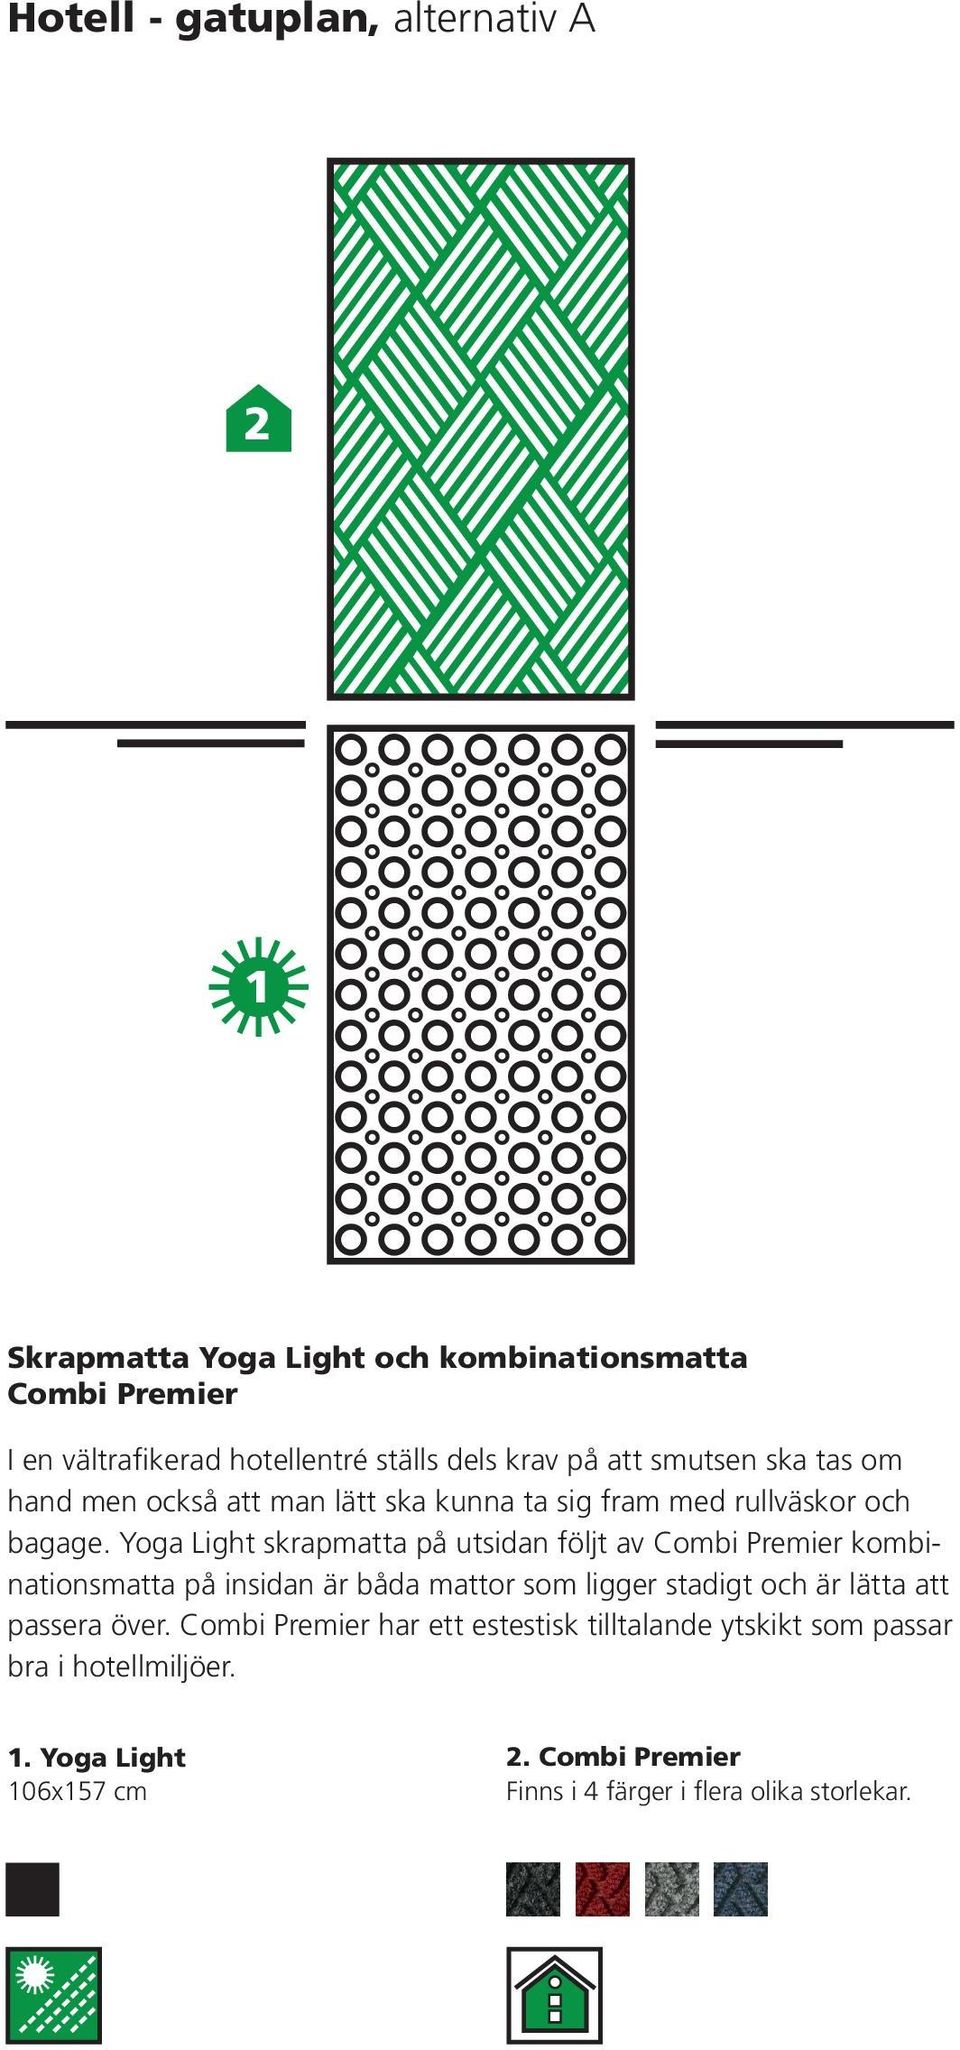 Yoga Light skrapmatta på utsidan följt av Combi Premier kombinationsmatta på insidan är båda mattor som ligger stadigt och är lätta att